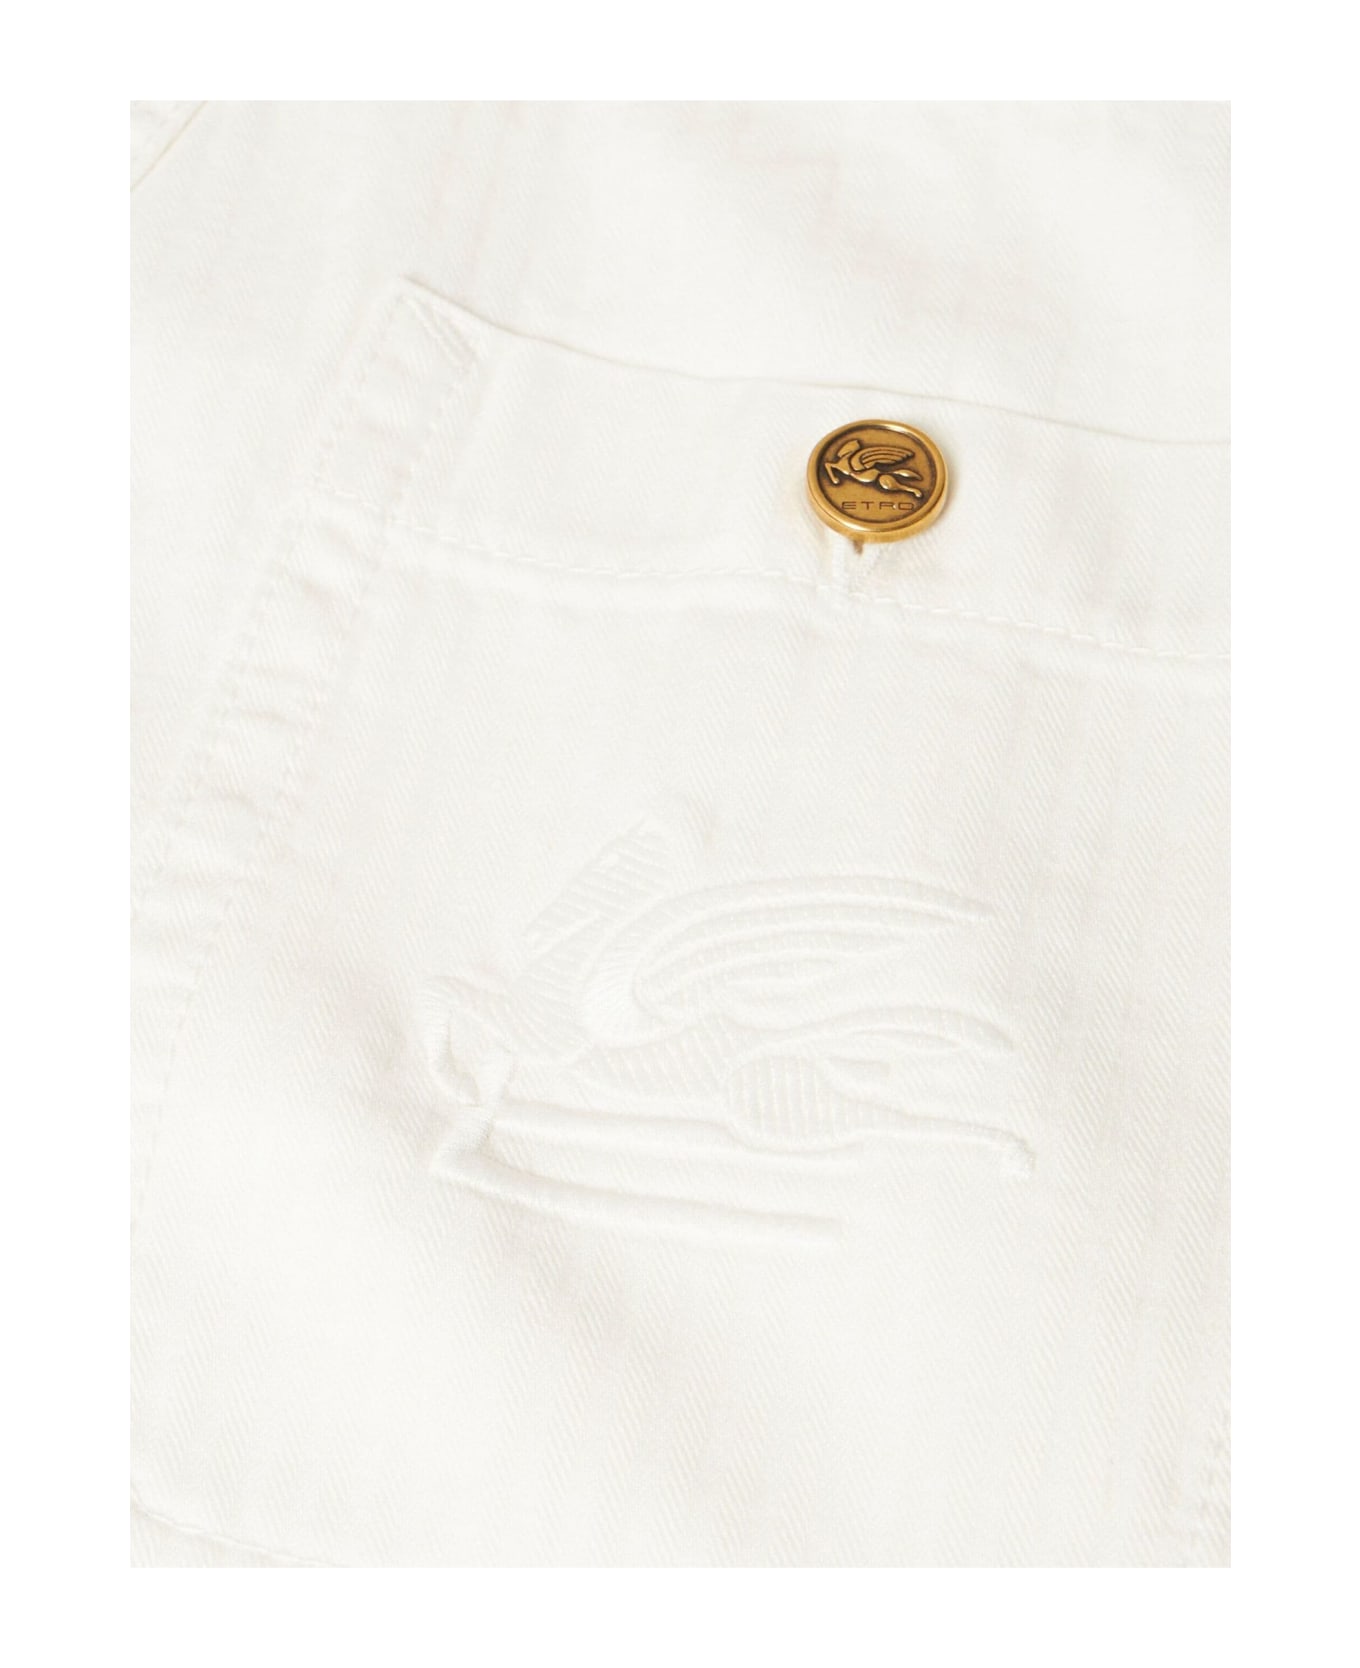 Etro White Cotton Denim Jeans - White ボトムス